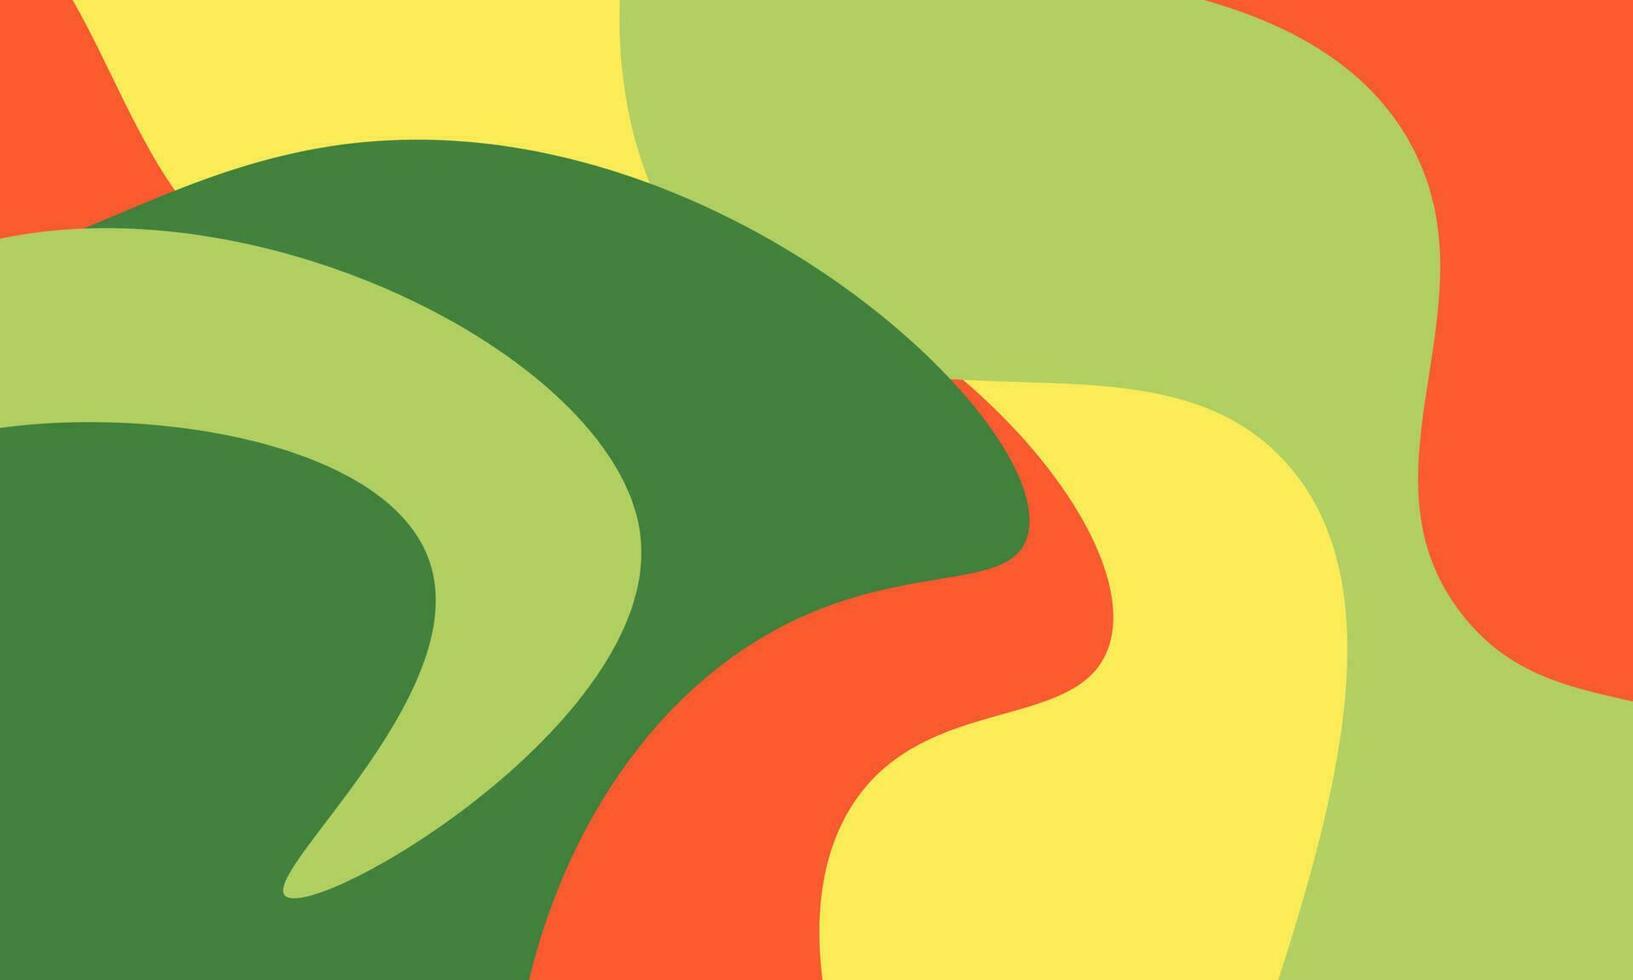 Vektor abstrakter Hintergrund für helle Farben der Social Media-Banner